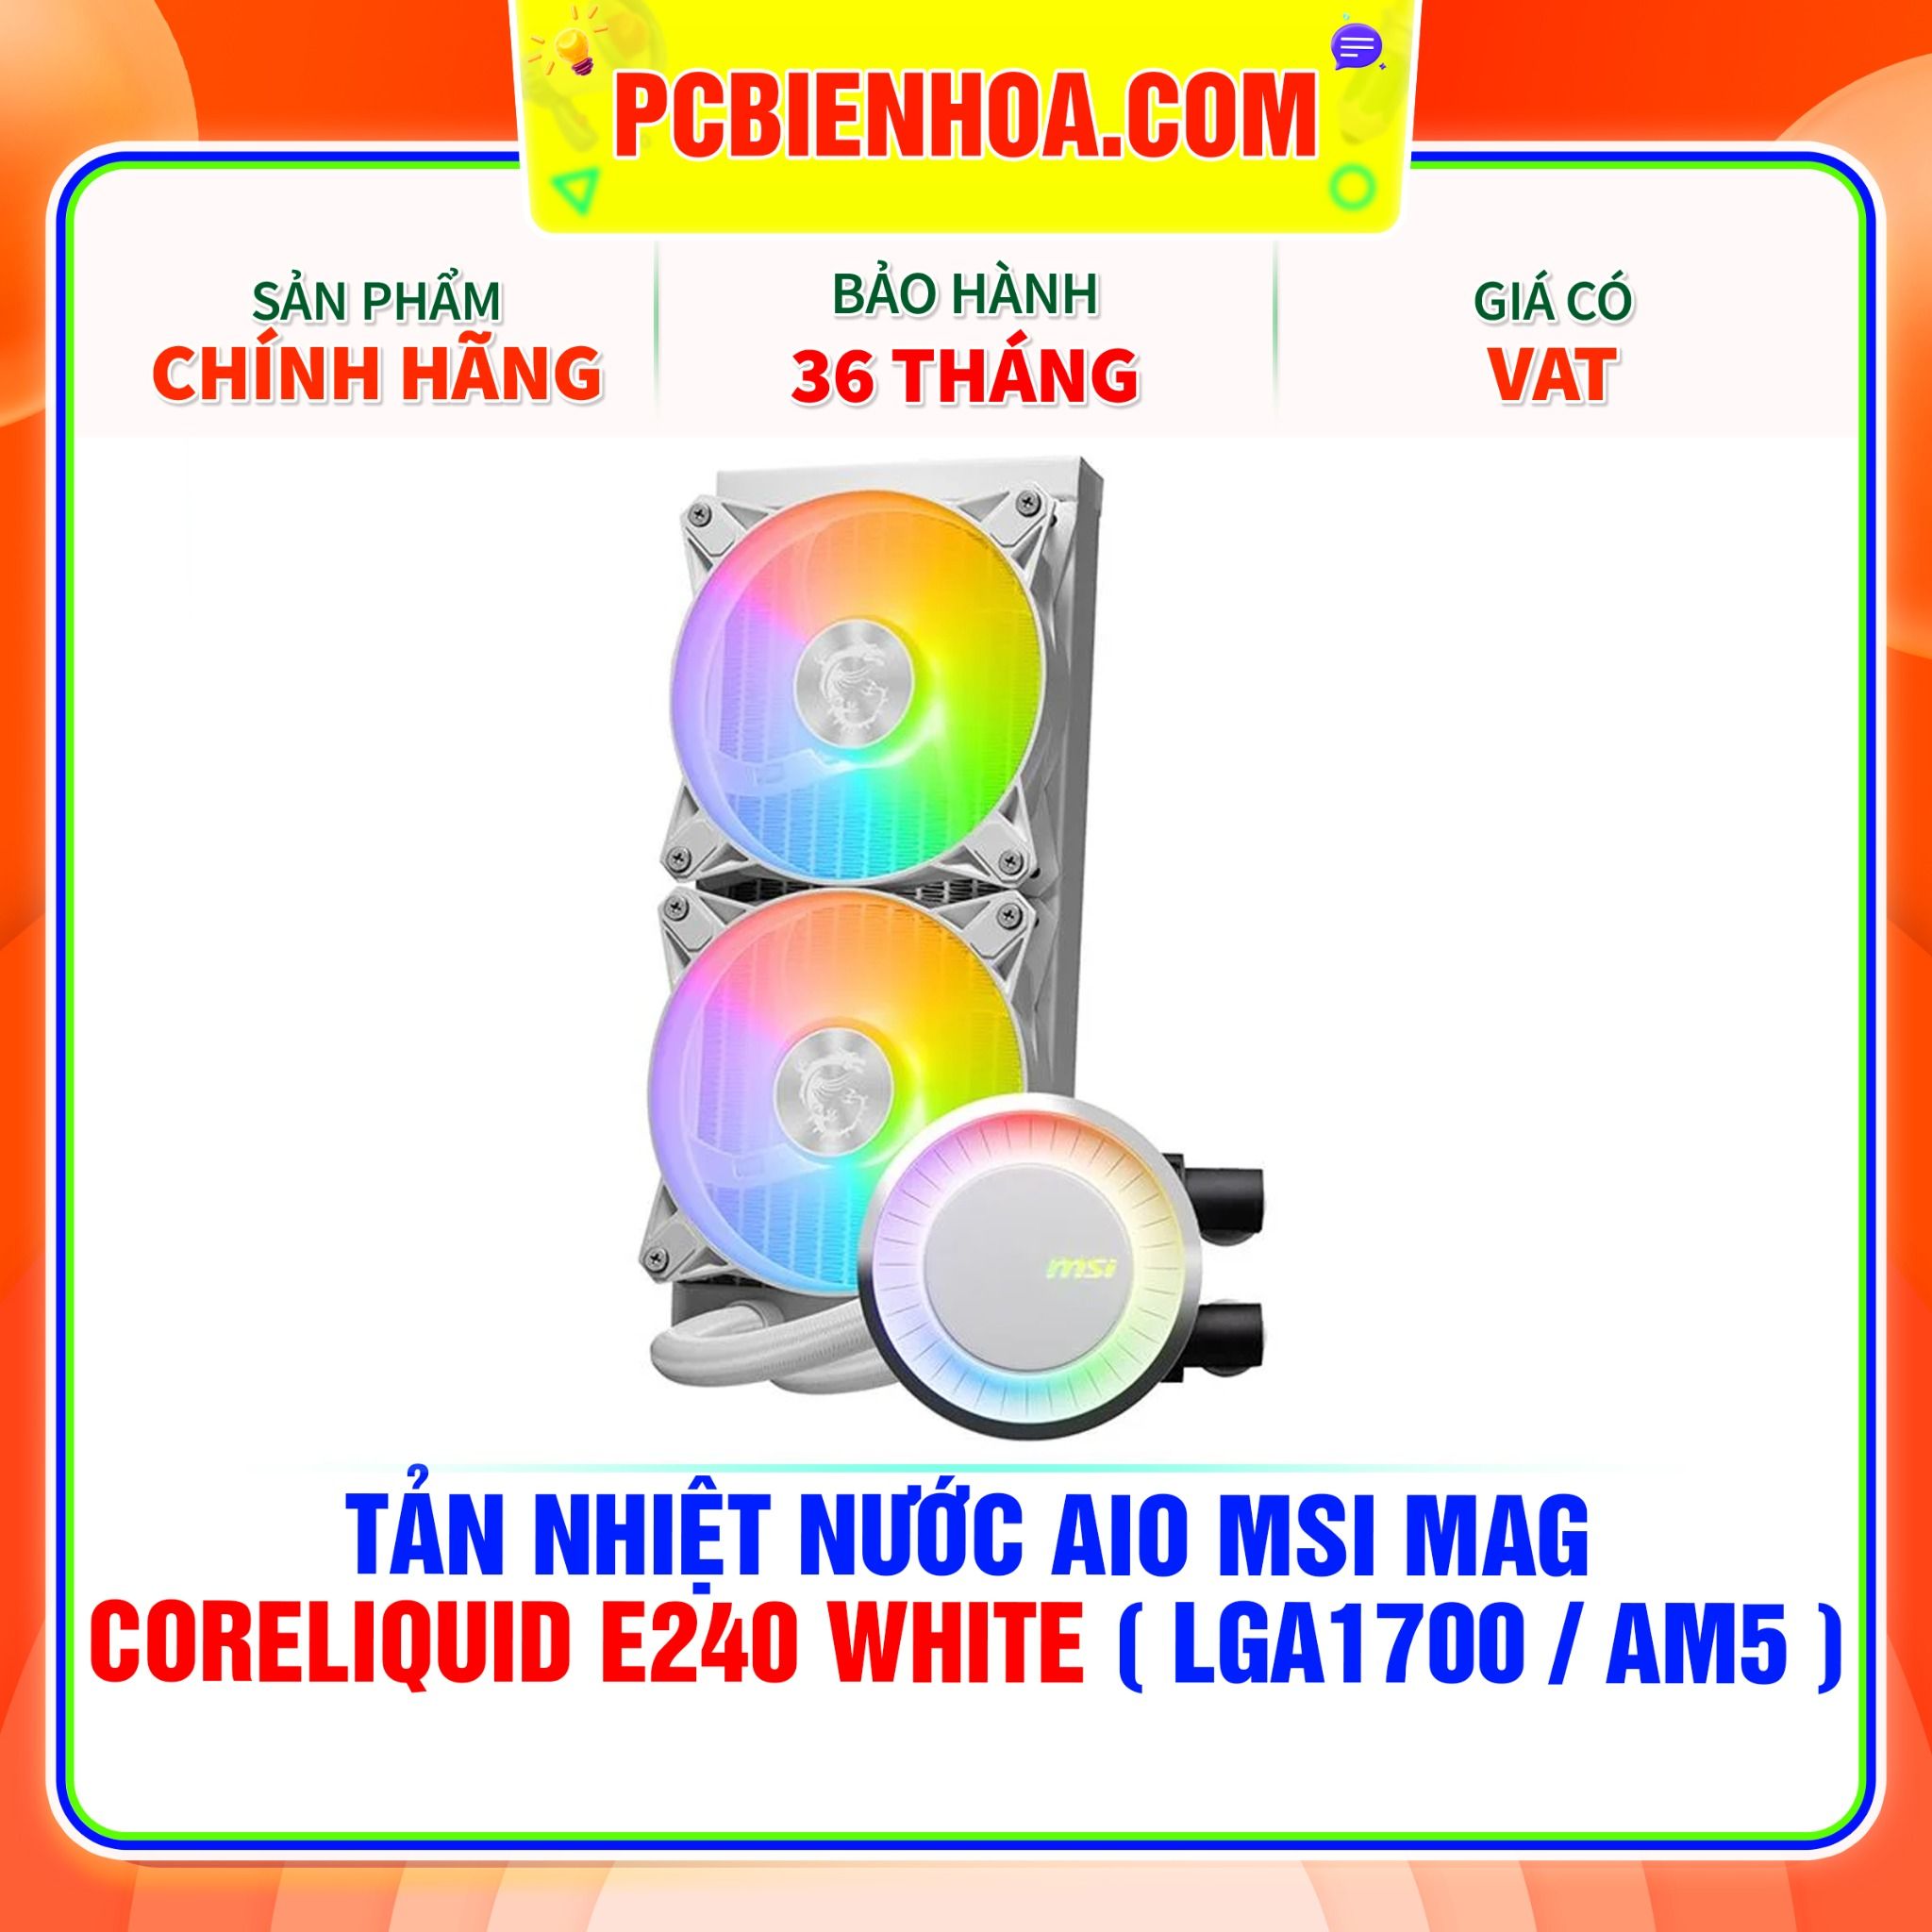  TẢN NHIỆT NƯỚC AIO MSI MAG CORELIQUID E240 WHITE ( HỖ TRỢ SOCKET LGA1700 / AM5 ) 